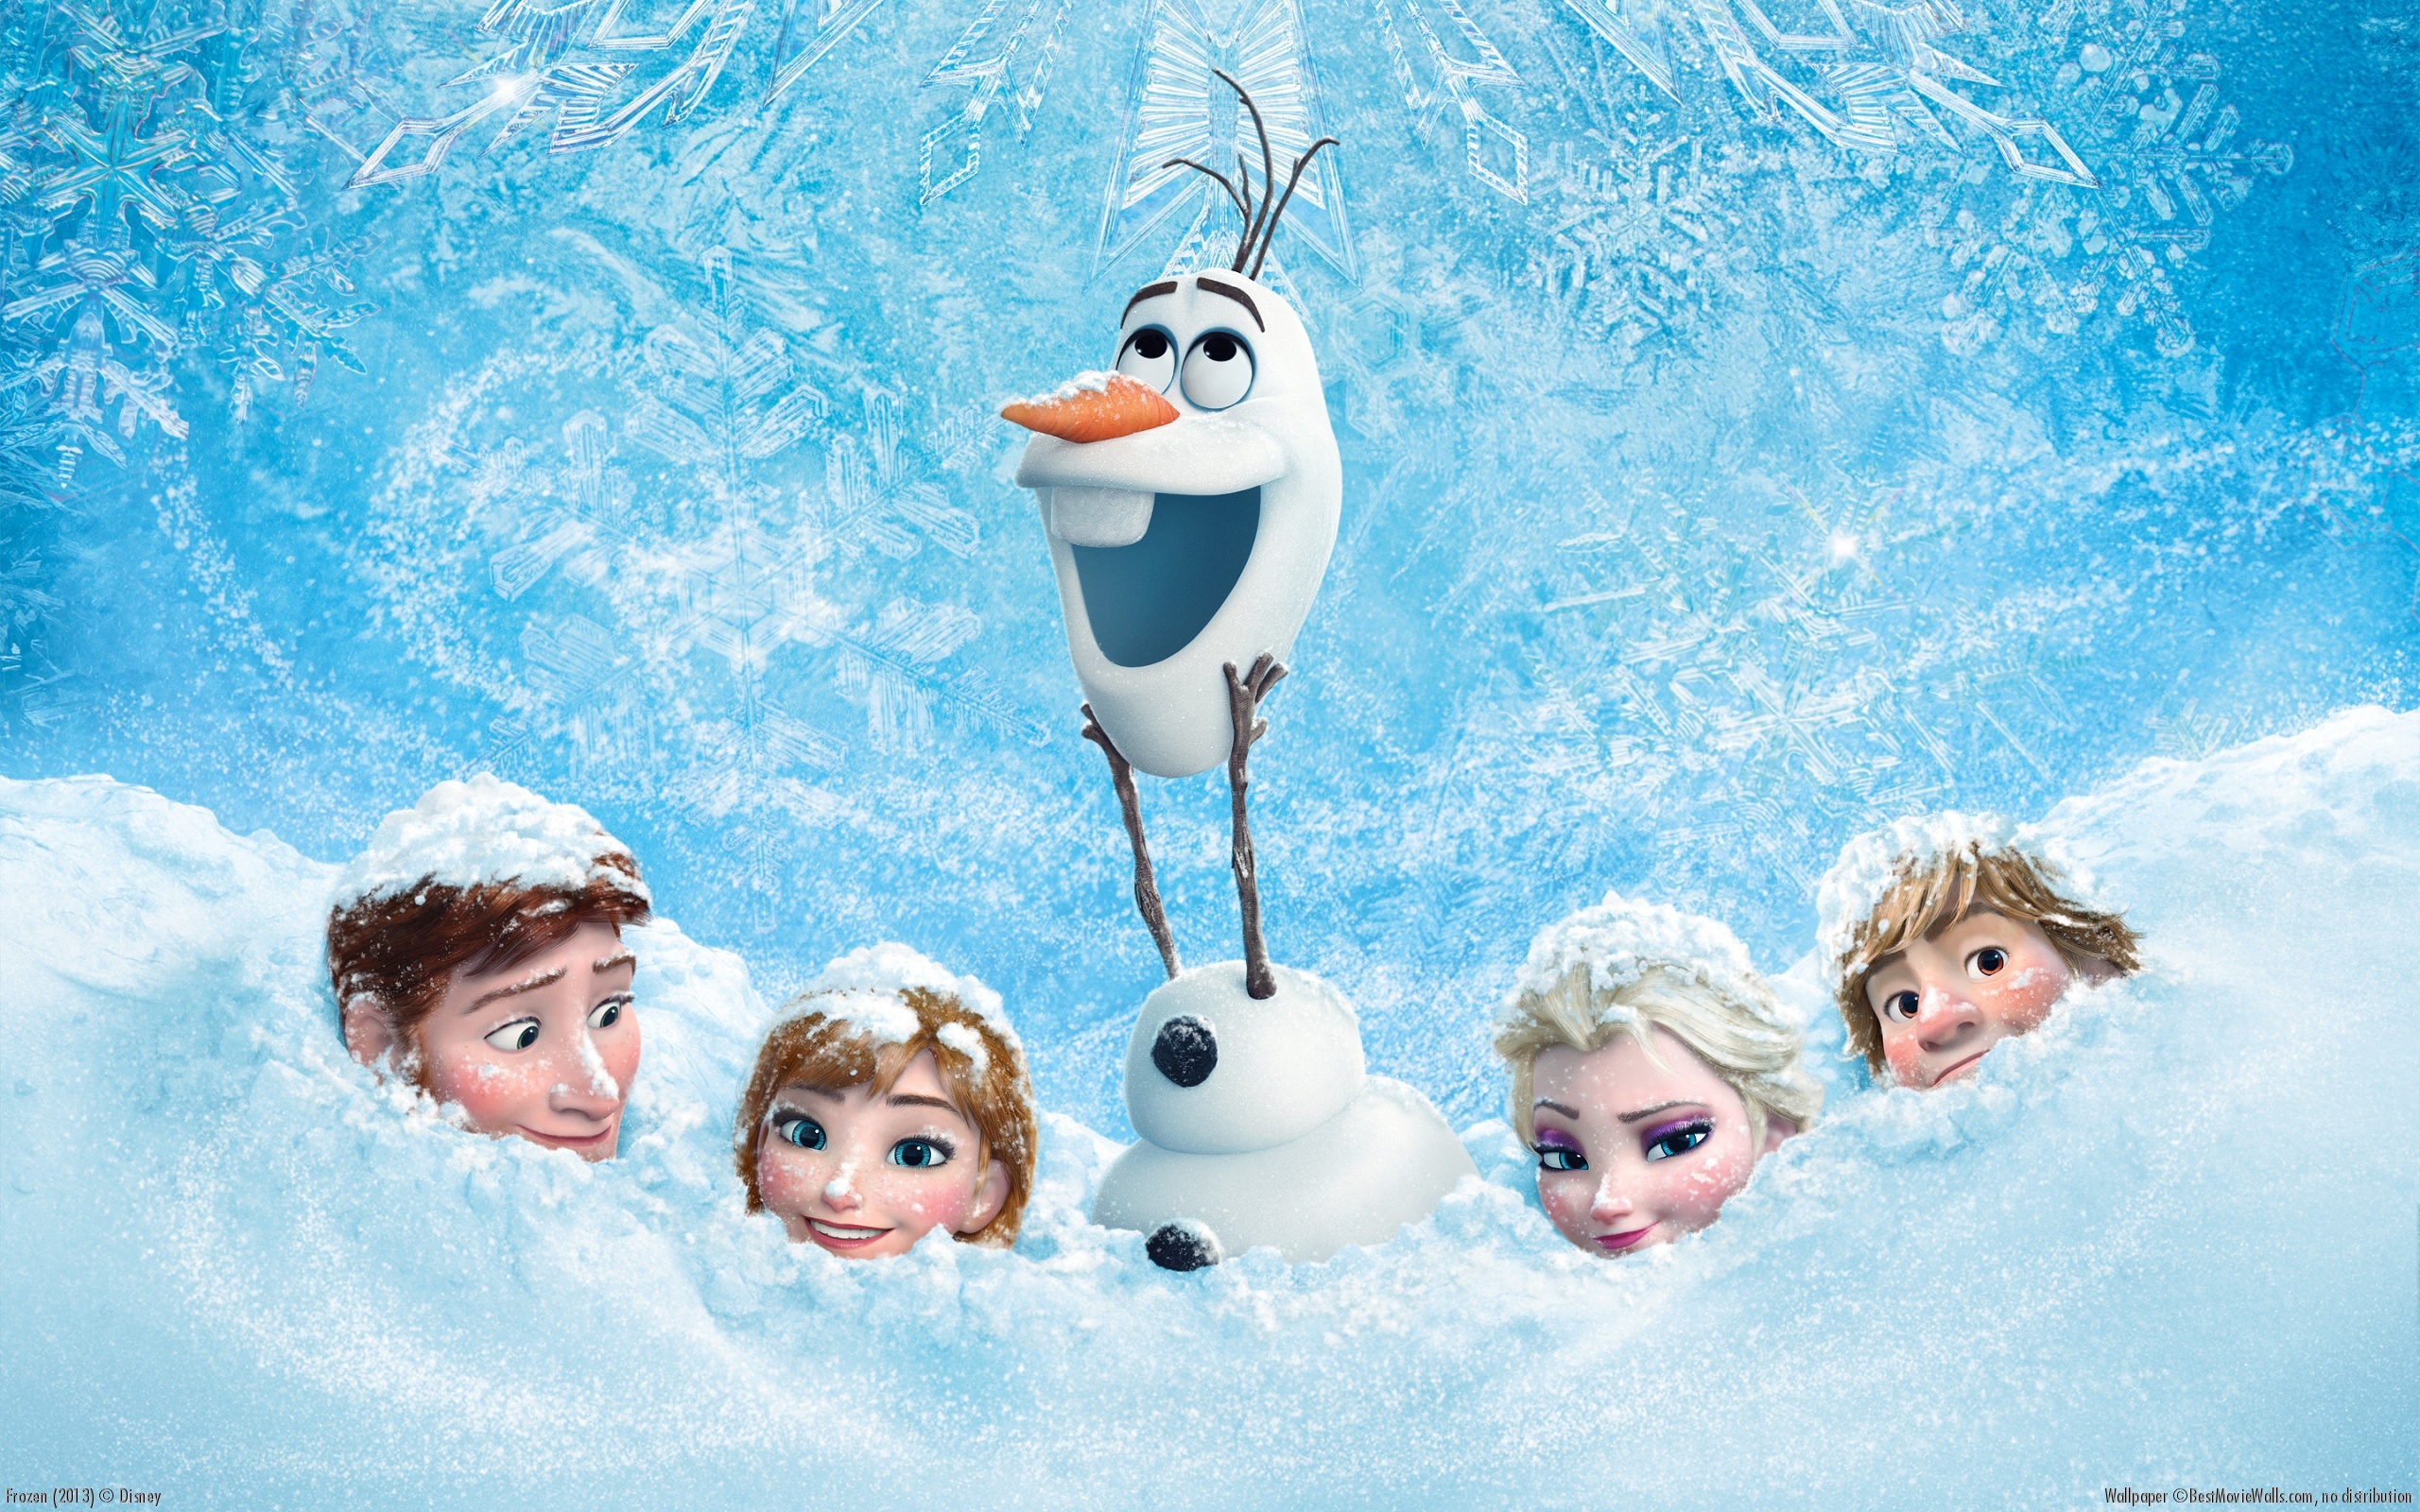 "Frozen", The Movie